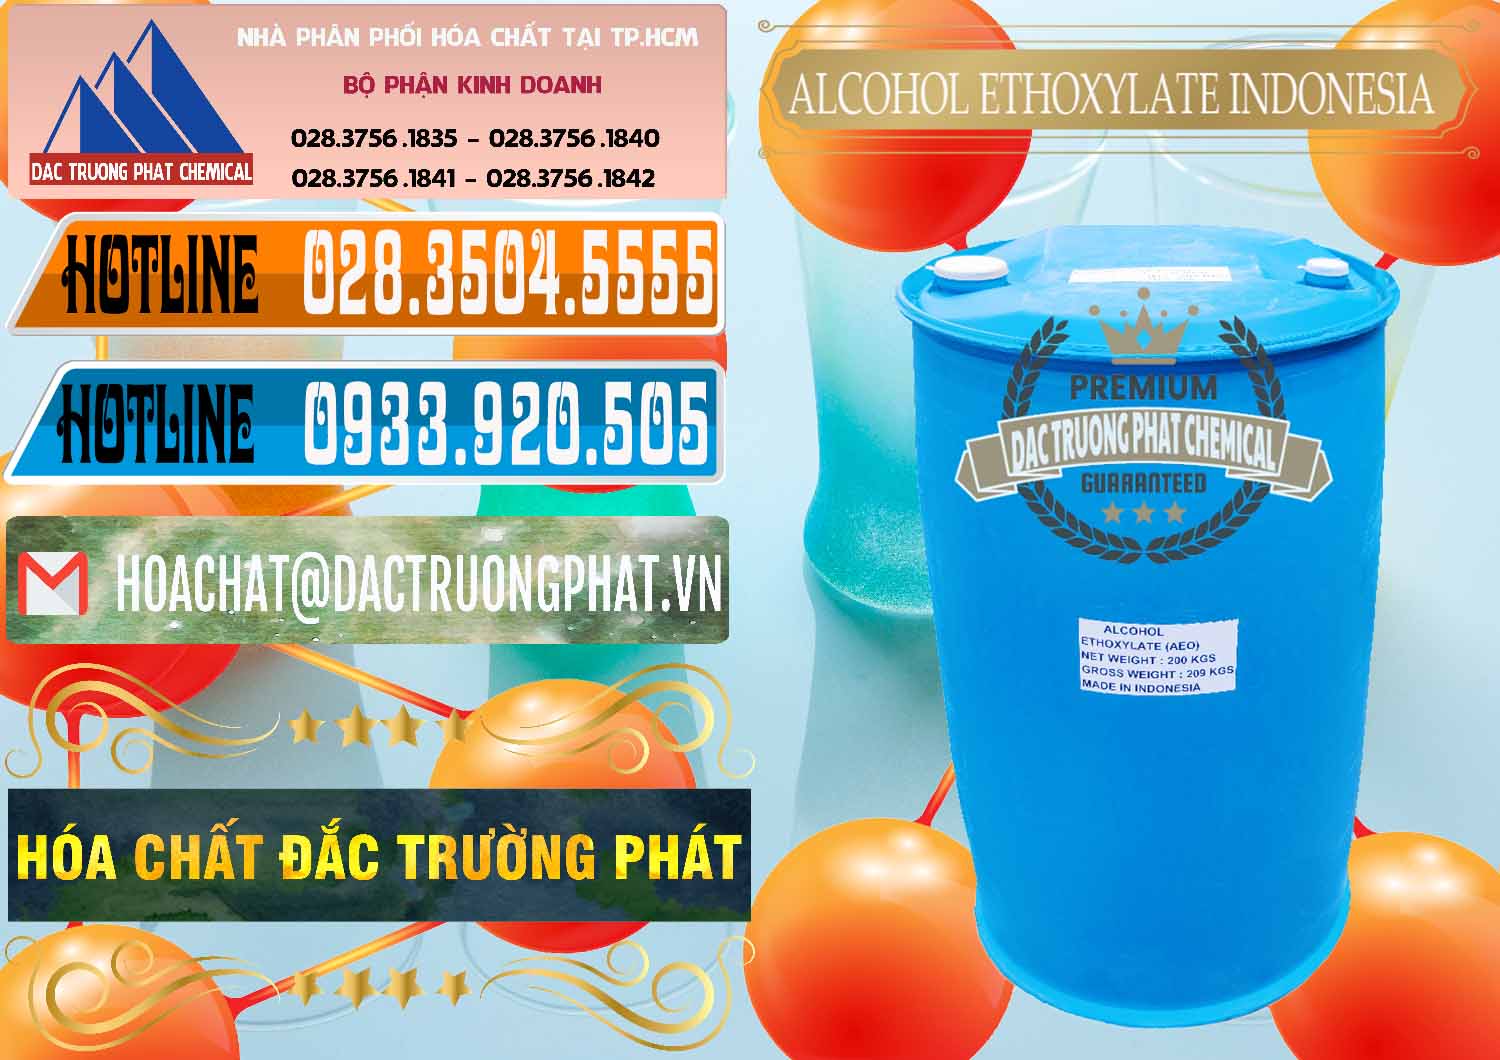 Cty cung cấp ( bán ) Alcohol Ethoxylate Indonesia - 0308 - Nhà cung cấp _ nhập khẩu hóa chất tại TP.HCM - stmp.net